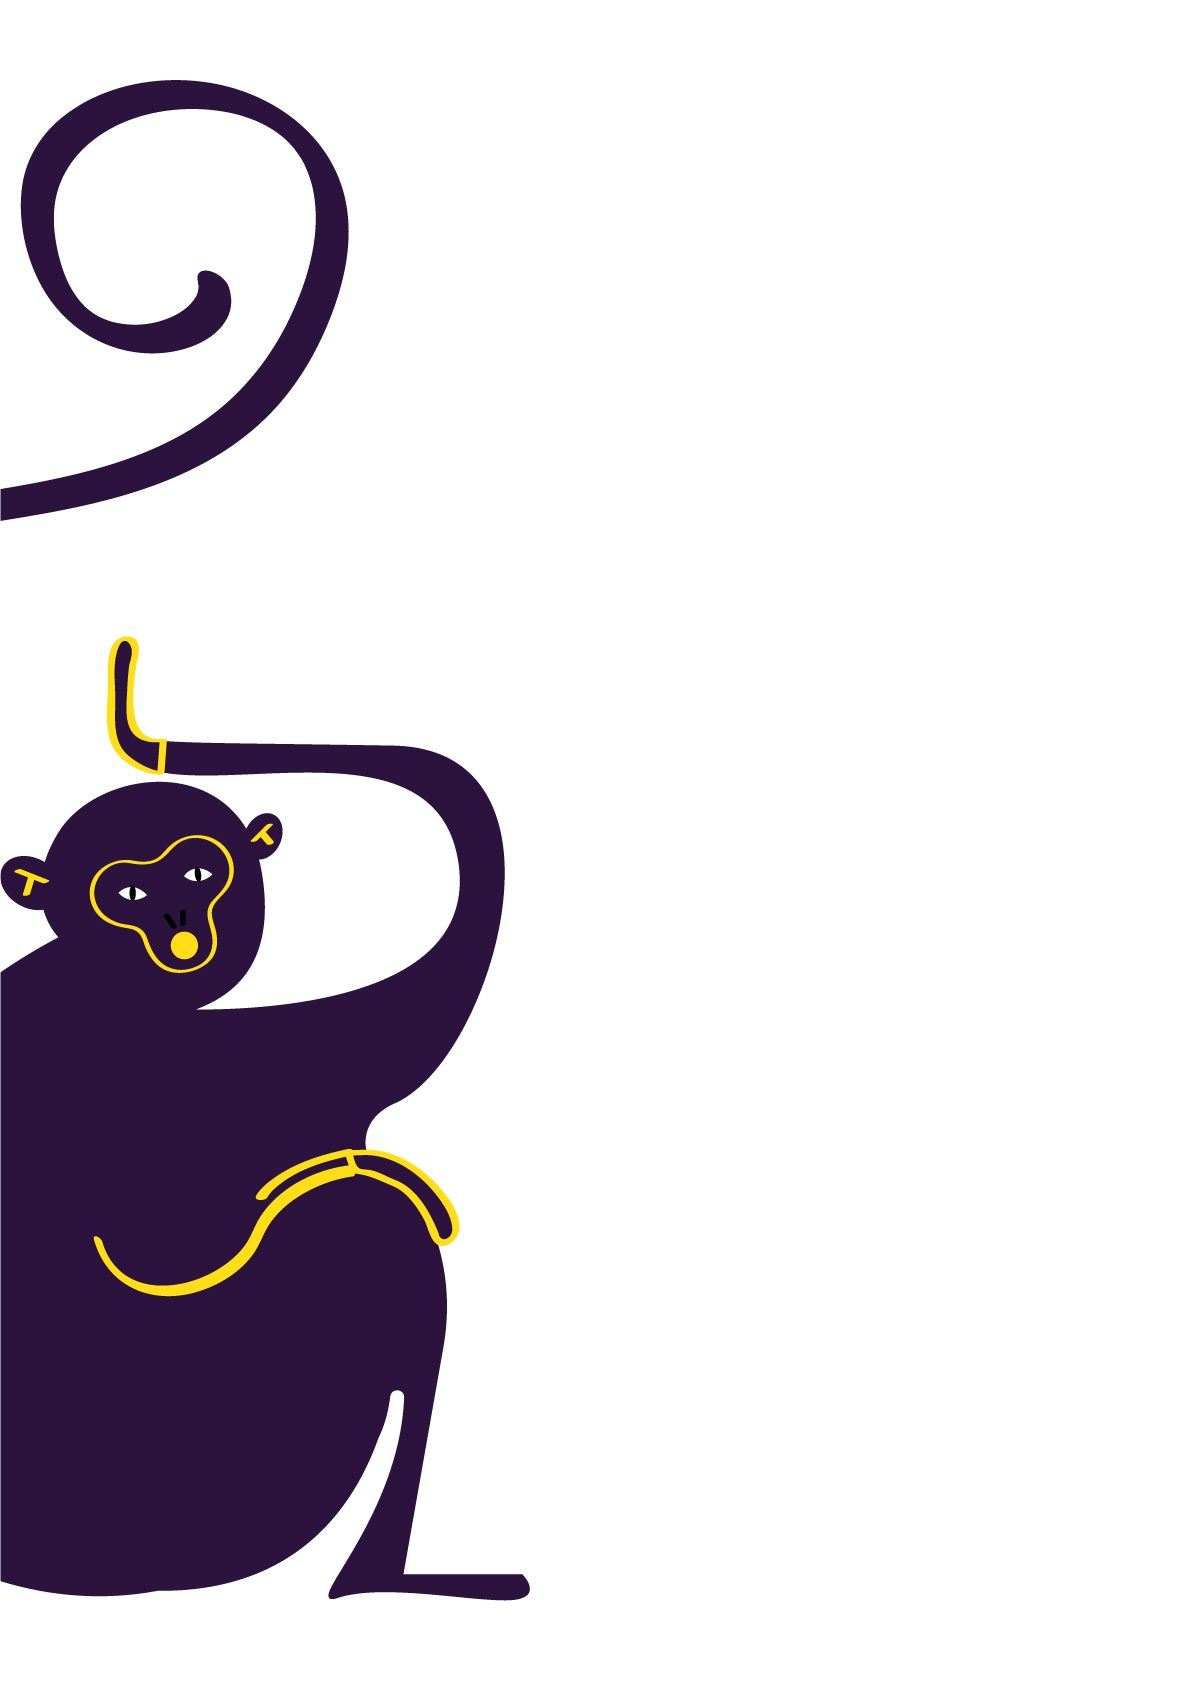 Chinese Horoscope Year of the Monkey